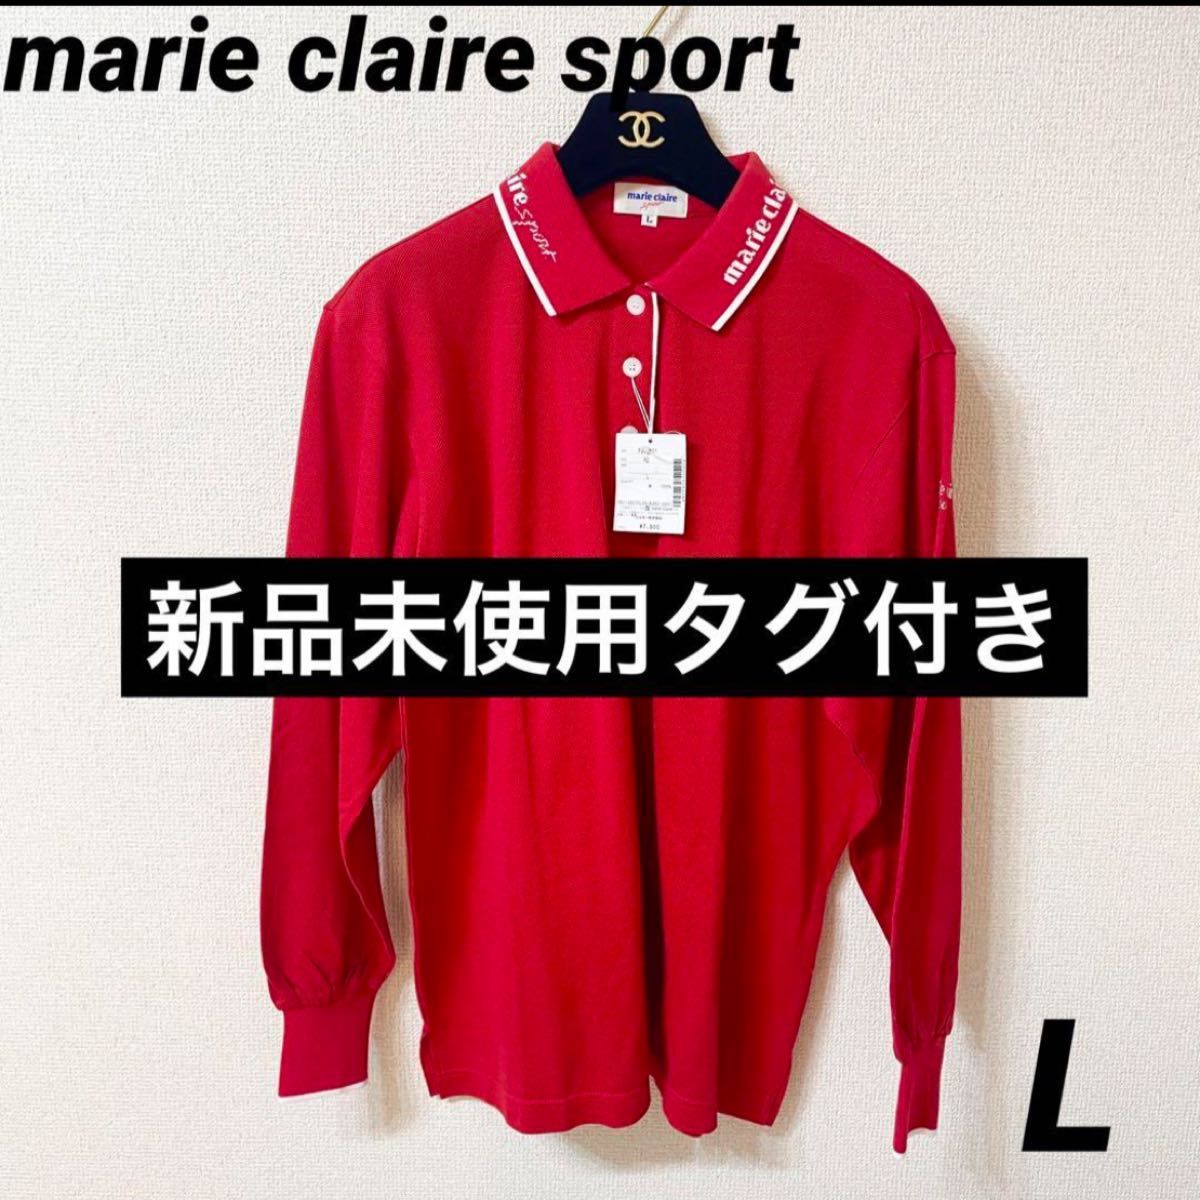 新品未使用タグ付き marieclaire sport ポロシャツ ロゴ 赤 L 長袖ポロシャツ